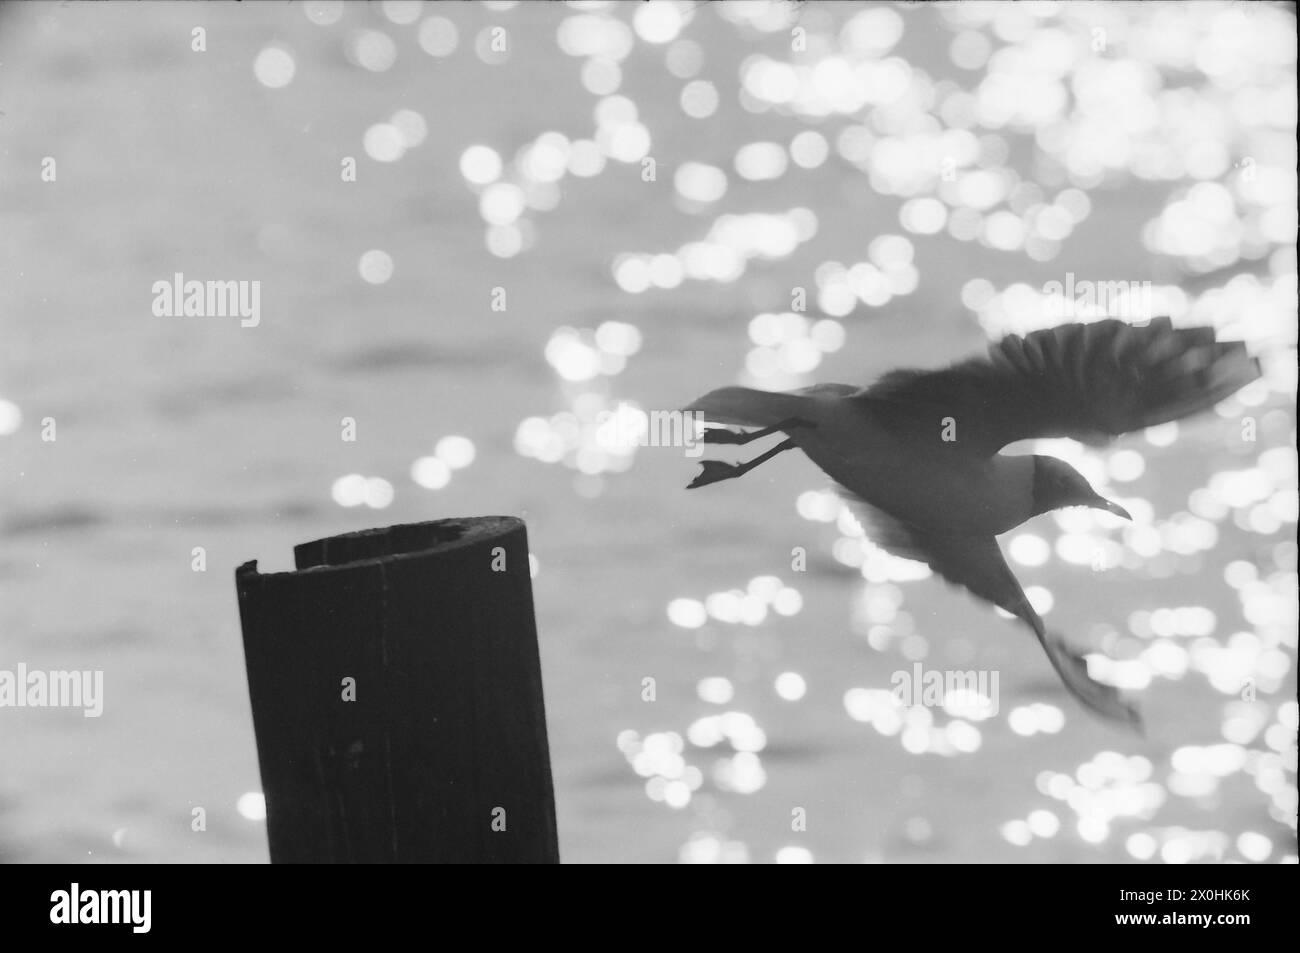 Die Vogelwelt am Starnberger See ist immer fotogen, wie hier, wo die Möwen abheben [automatisierte Übersetzung] Stockfoto